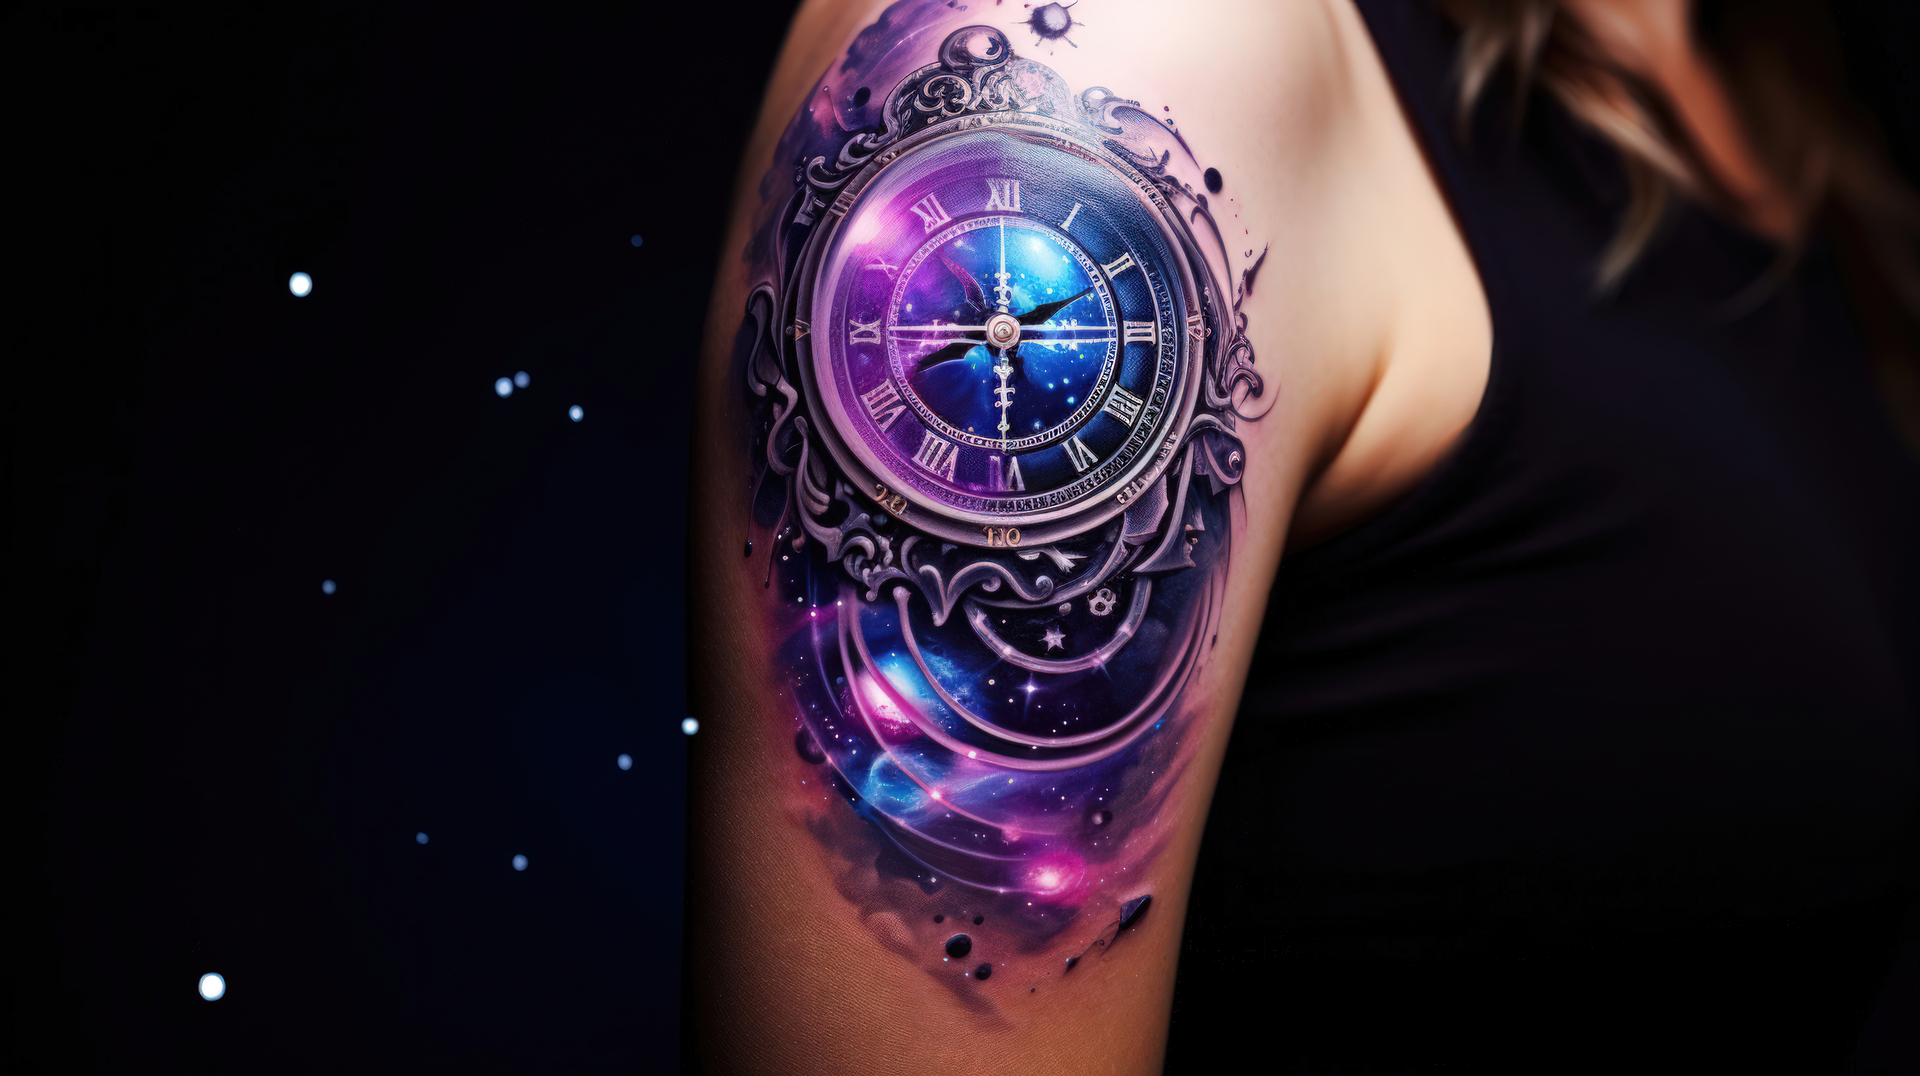 Tatuaż na ramieniu osoby przedstawia złożony zegar z rzymskimi cyframi, wkomponowany w kosmiczną scenerię z galaktykami i gwiazdami. Kolorowa kompozycja łączy elementy steampunku i astronomii, tworząc hipnotyzujący obraz z głębokimi odcieniami fioletu i błękitu